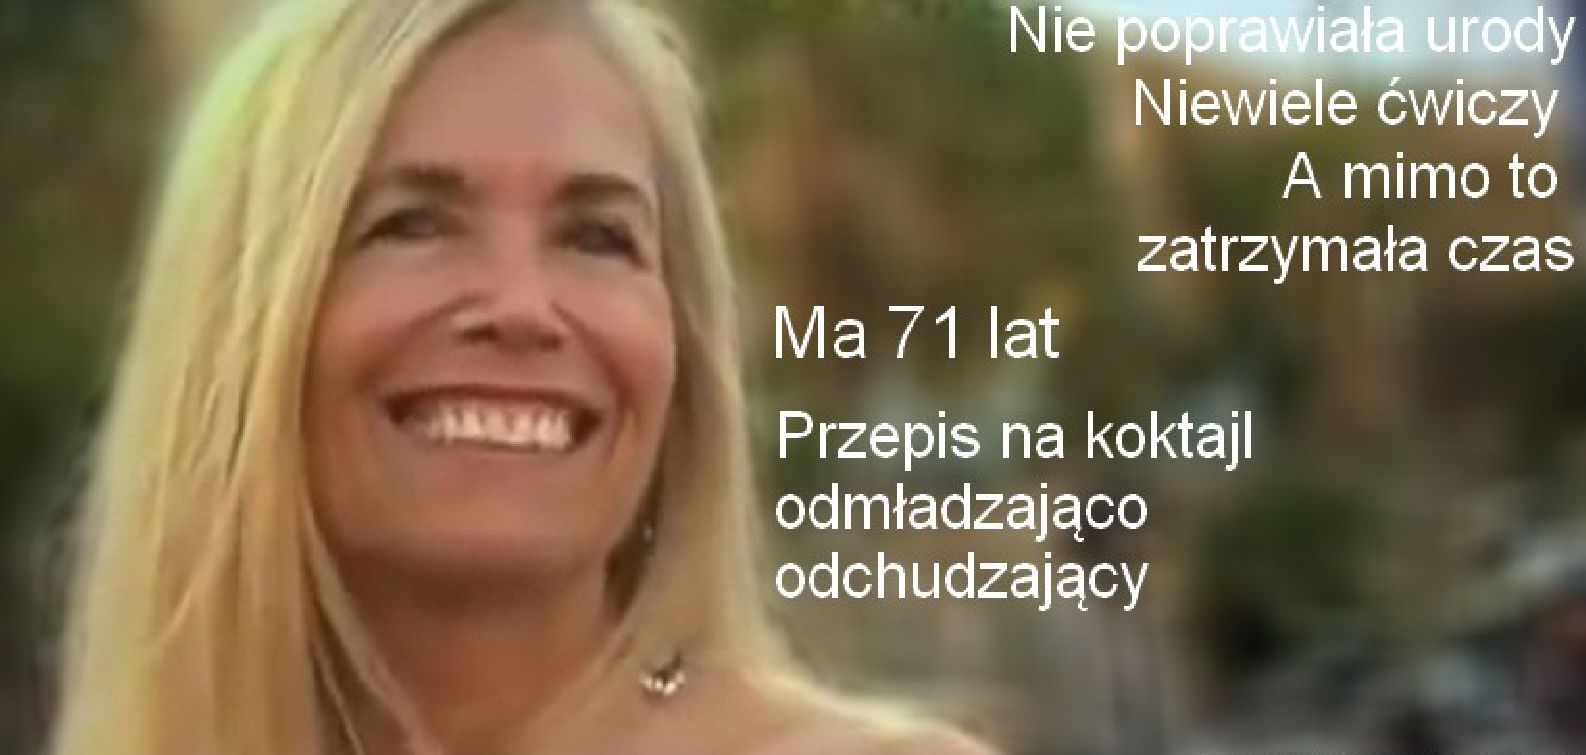 zdrowie.hotto.pl-71-letnia-wegetarianka-koktakl-odmladzajaco-odchudzajacy